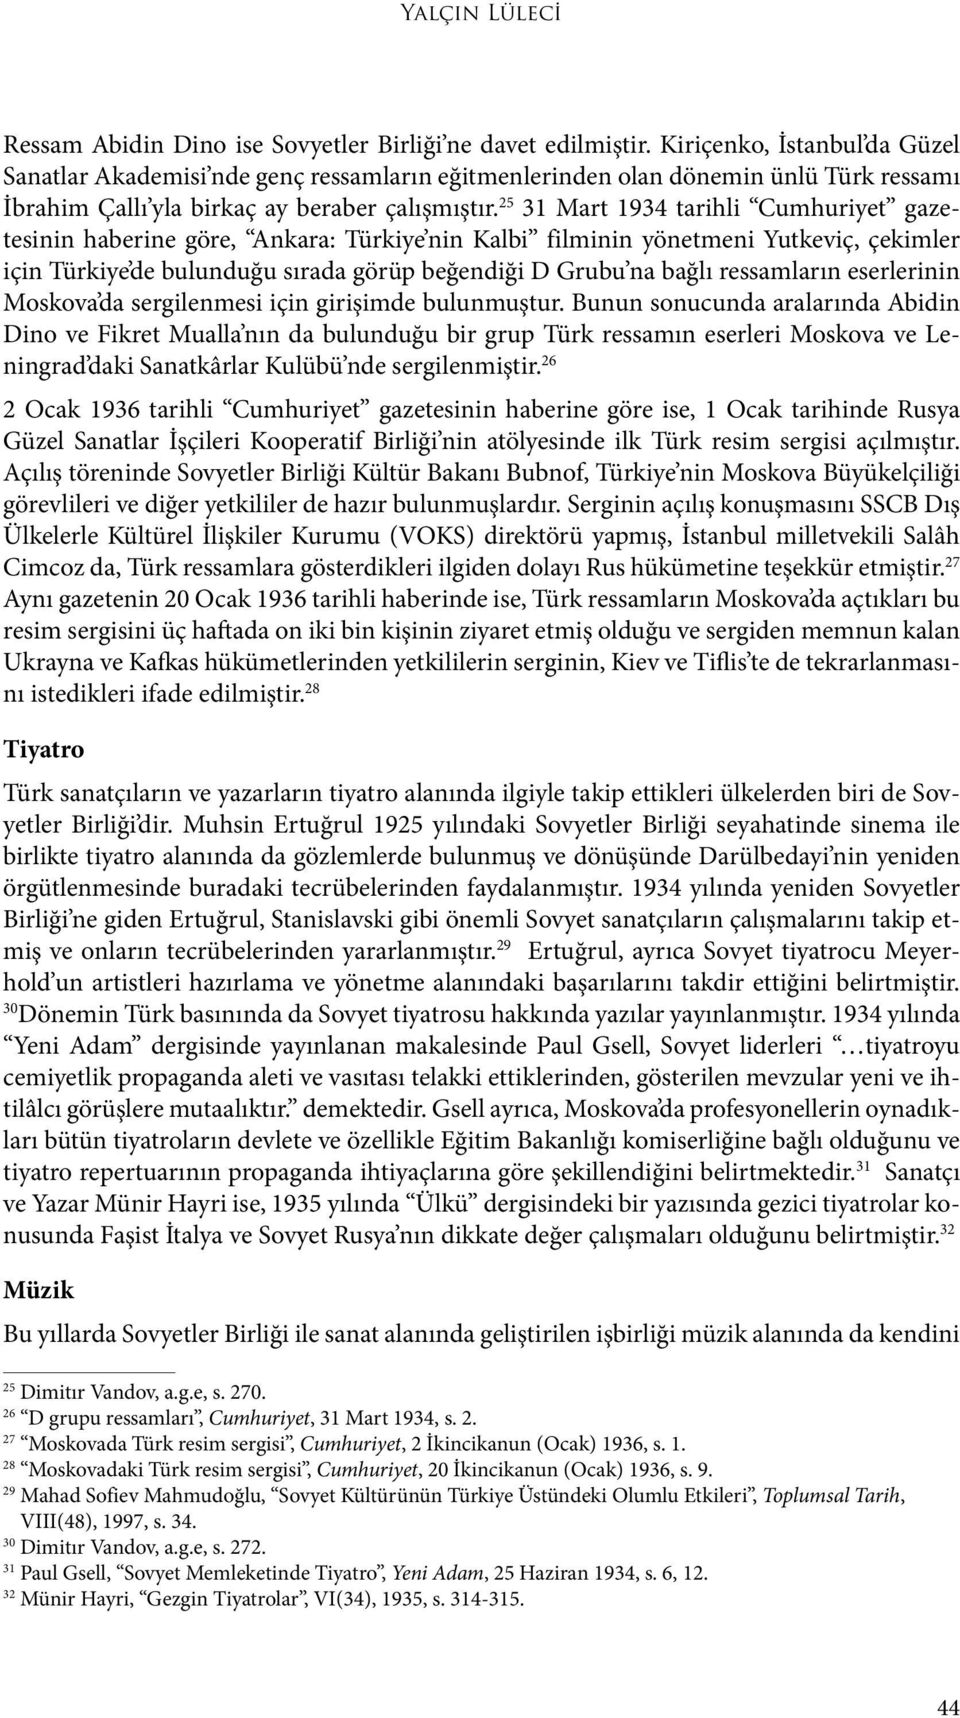 25 31 Mart 1934 tarihli Cumhuriyet gazetesinin haberine göre, Ankara: Türkiye nin Kalbi filminin yönetmeni Yutkeviç, çekimler için Türkiye de bulunduğu sırada görüp beğendiği D Grubu na bağlı